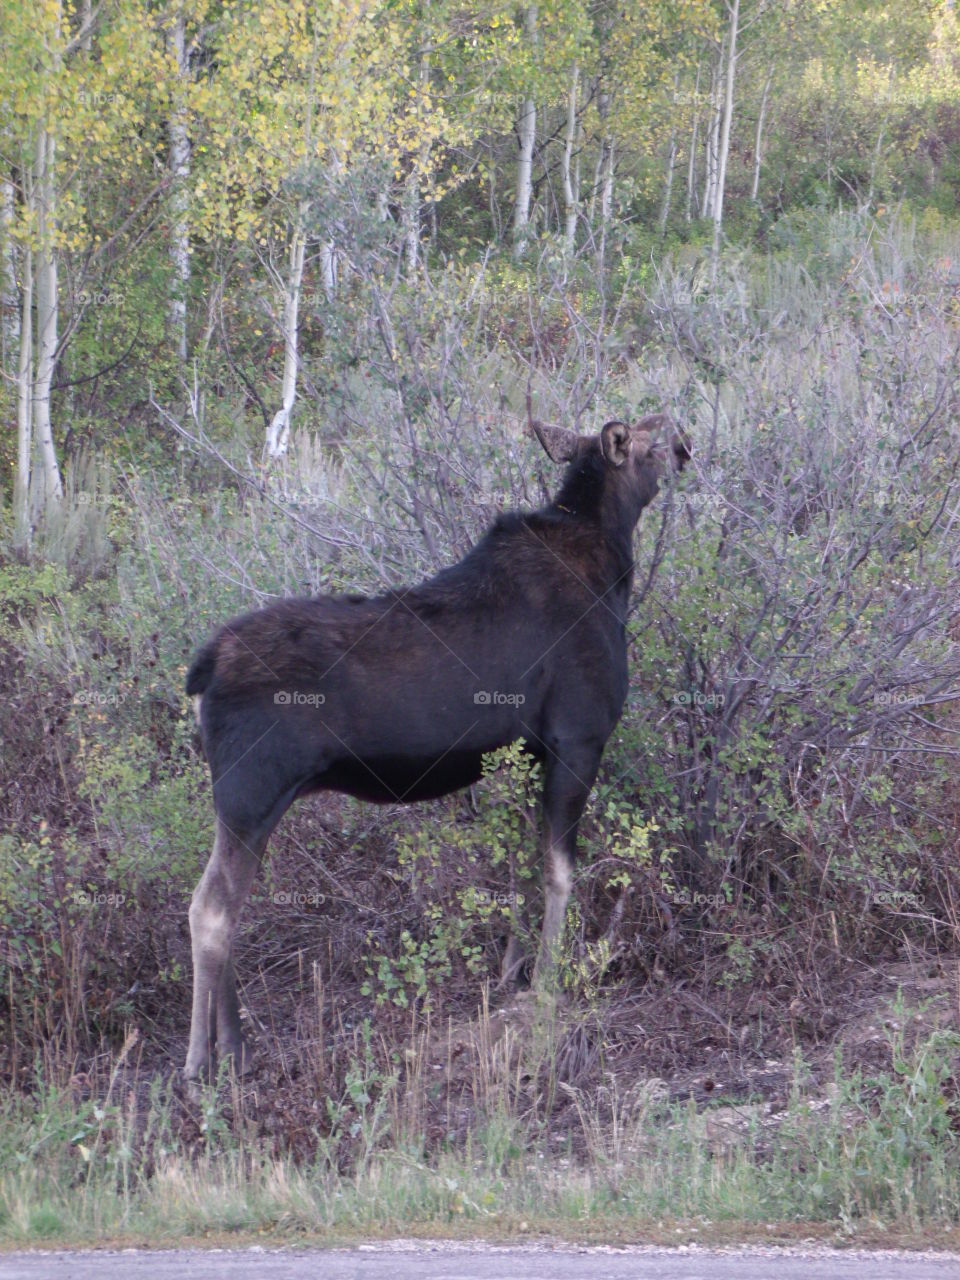 Moose munching down